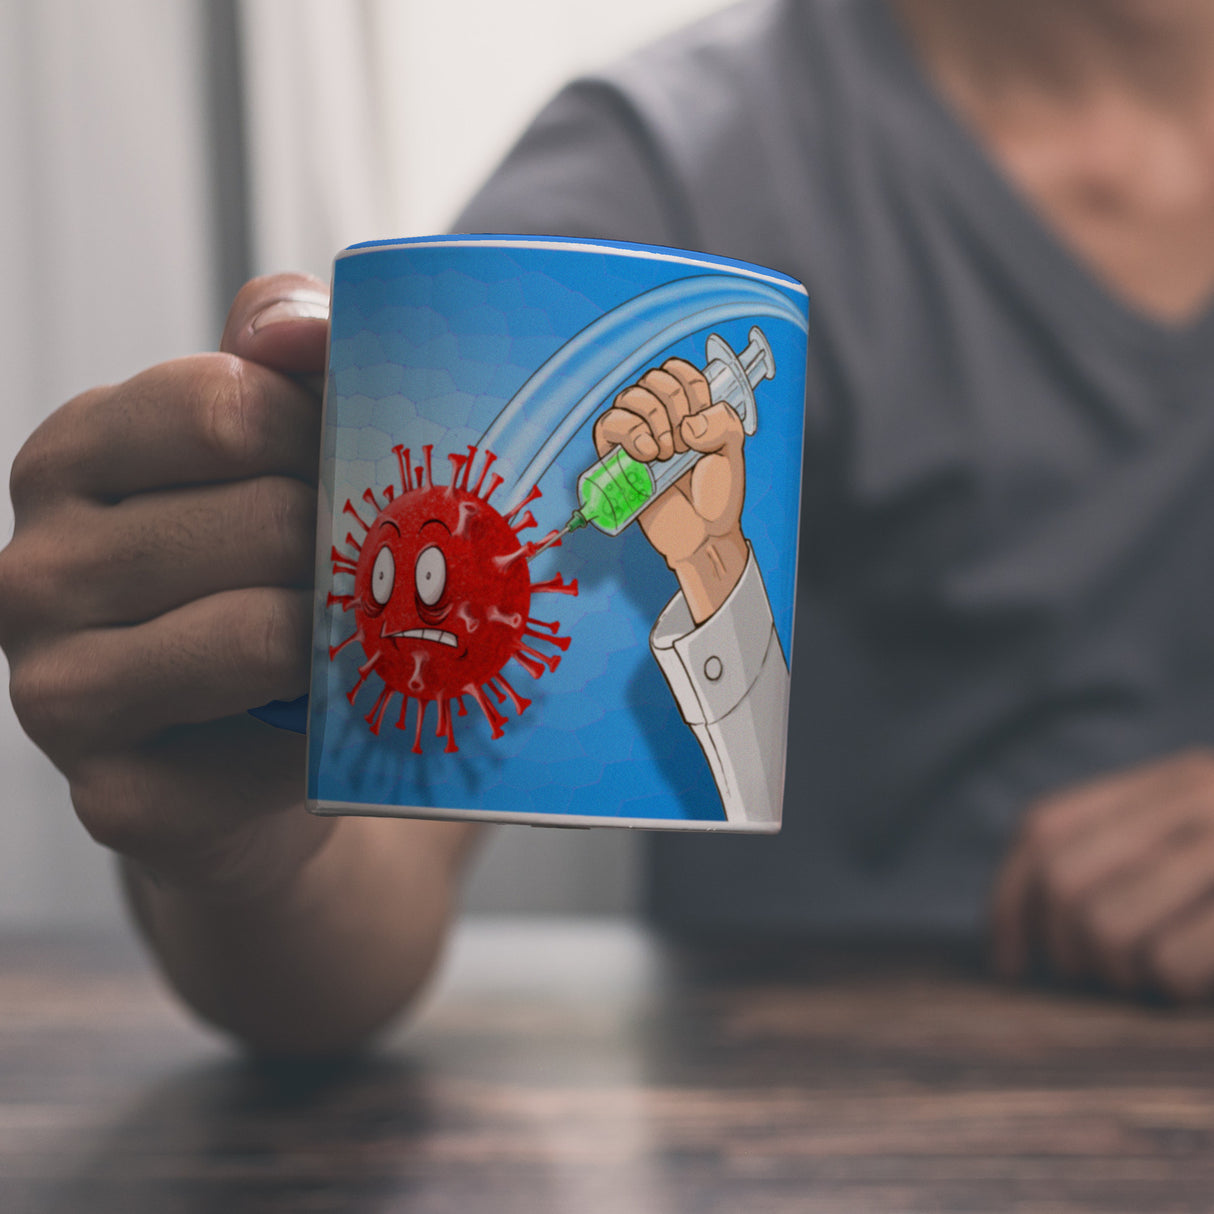 Kaffeebecher mit Virus und Spritzen Motiv - Geimpft! Lustiger Impfhumor